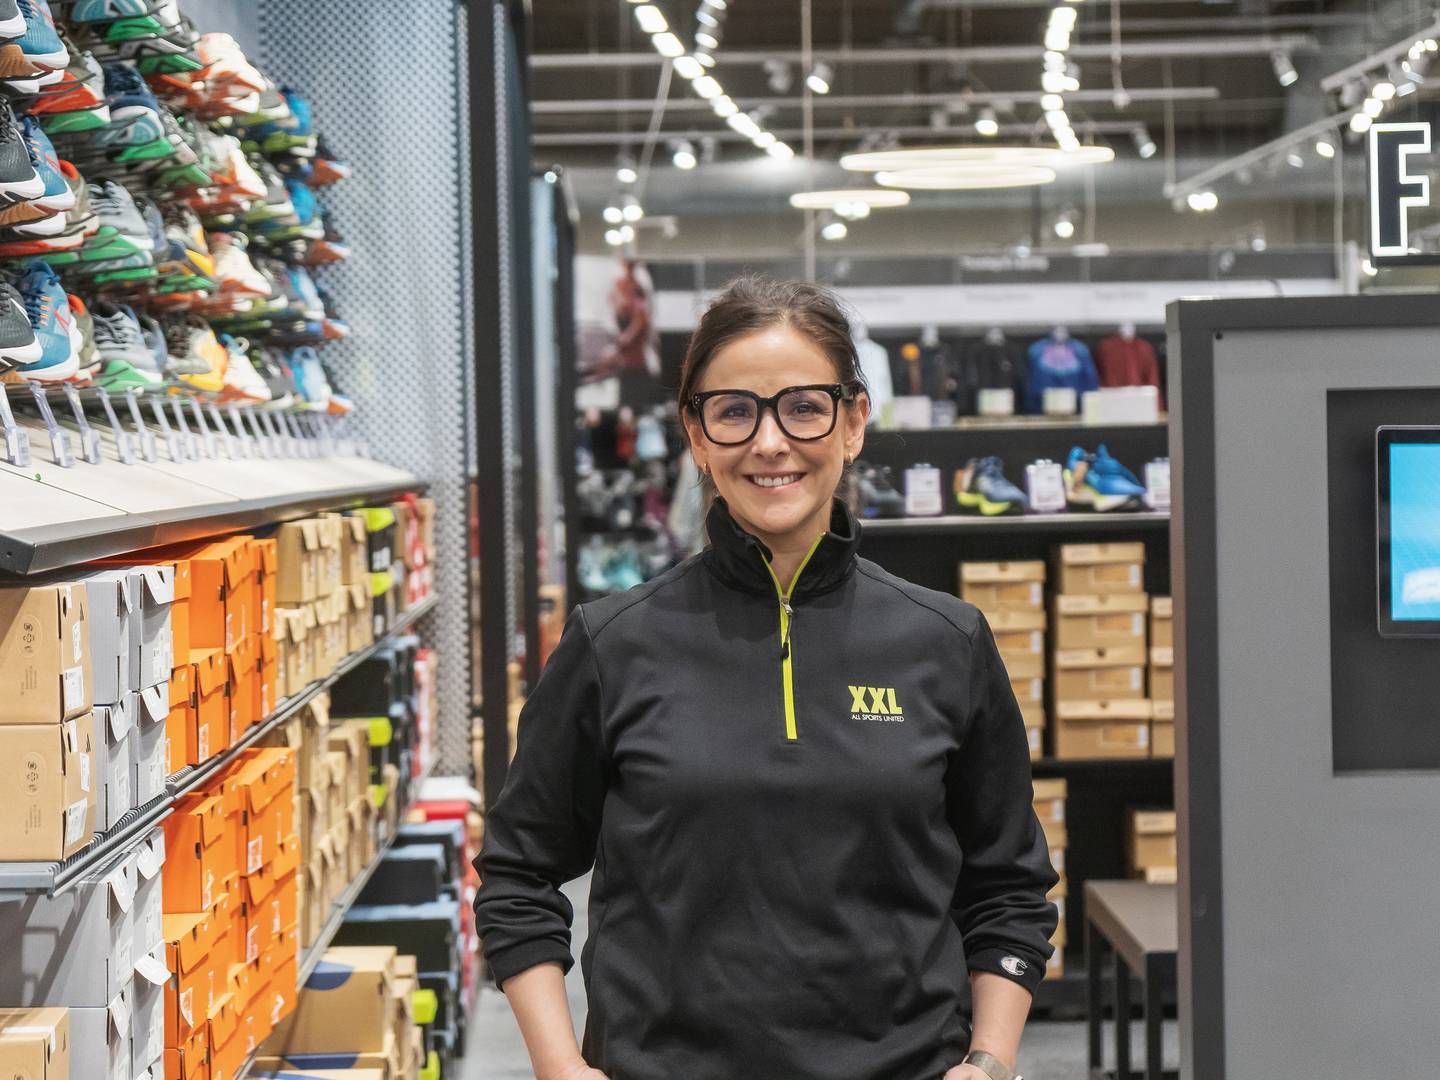 Cristina Moreno var med til at åbne XXL's første butik i Oslo i 2001. Nu – 12 år efter – bliver hun om få måneder landechef for XXL Norge. | Photo: XXL/Pr